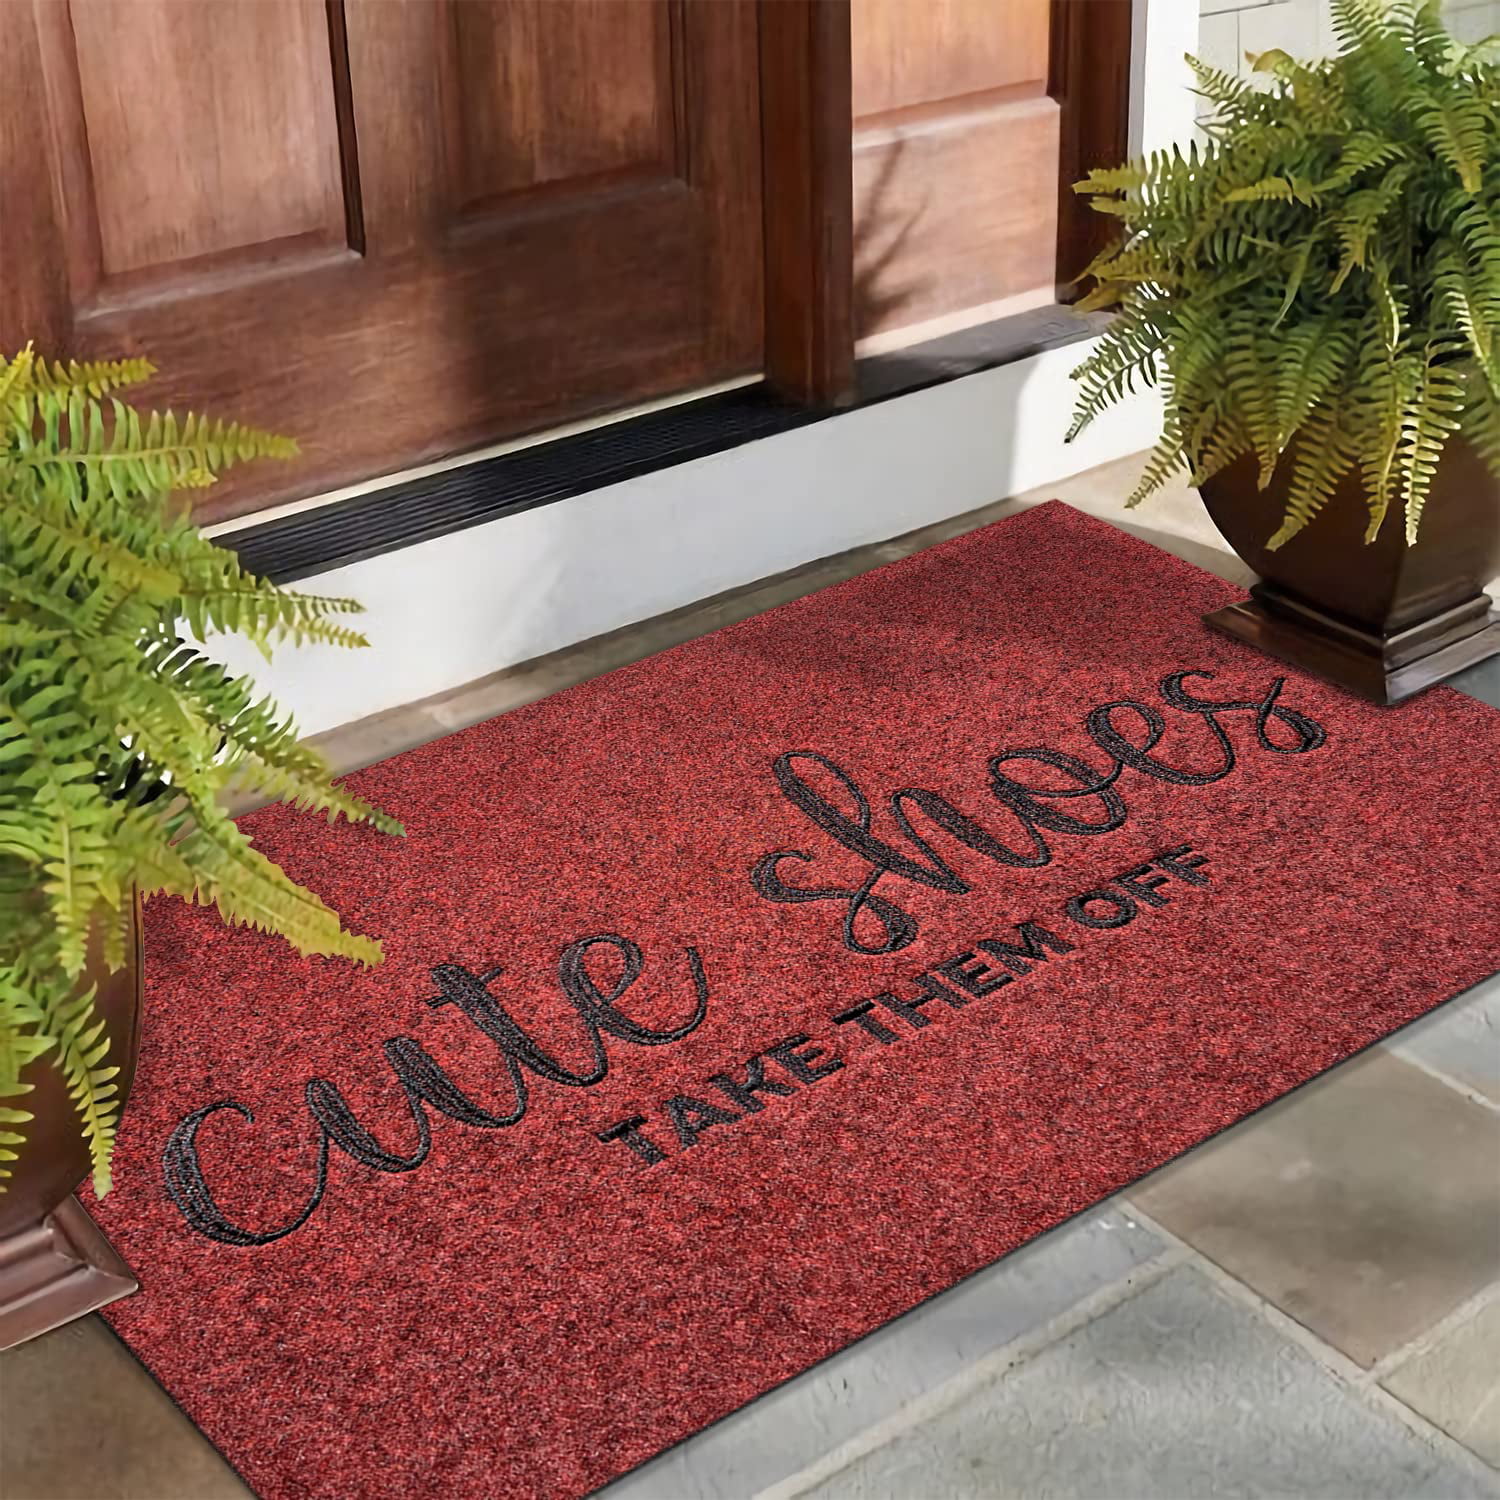 ANMINY Front Doormat Entrance Shoe Mat Waterproof PVC Non Slip Rug Outdoor  Indoor,31x47 Red